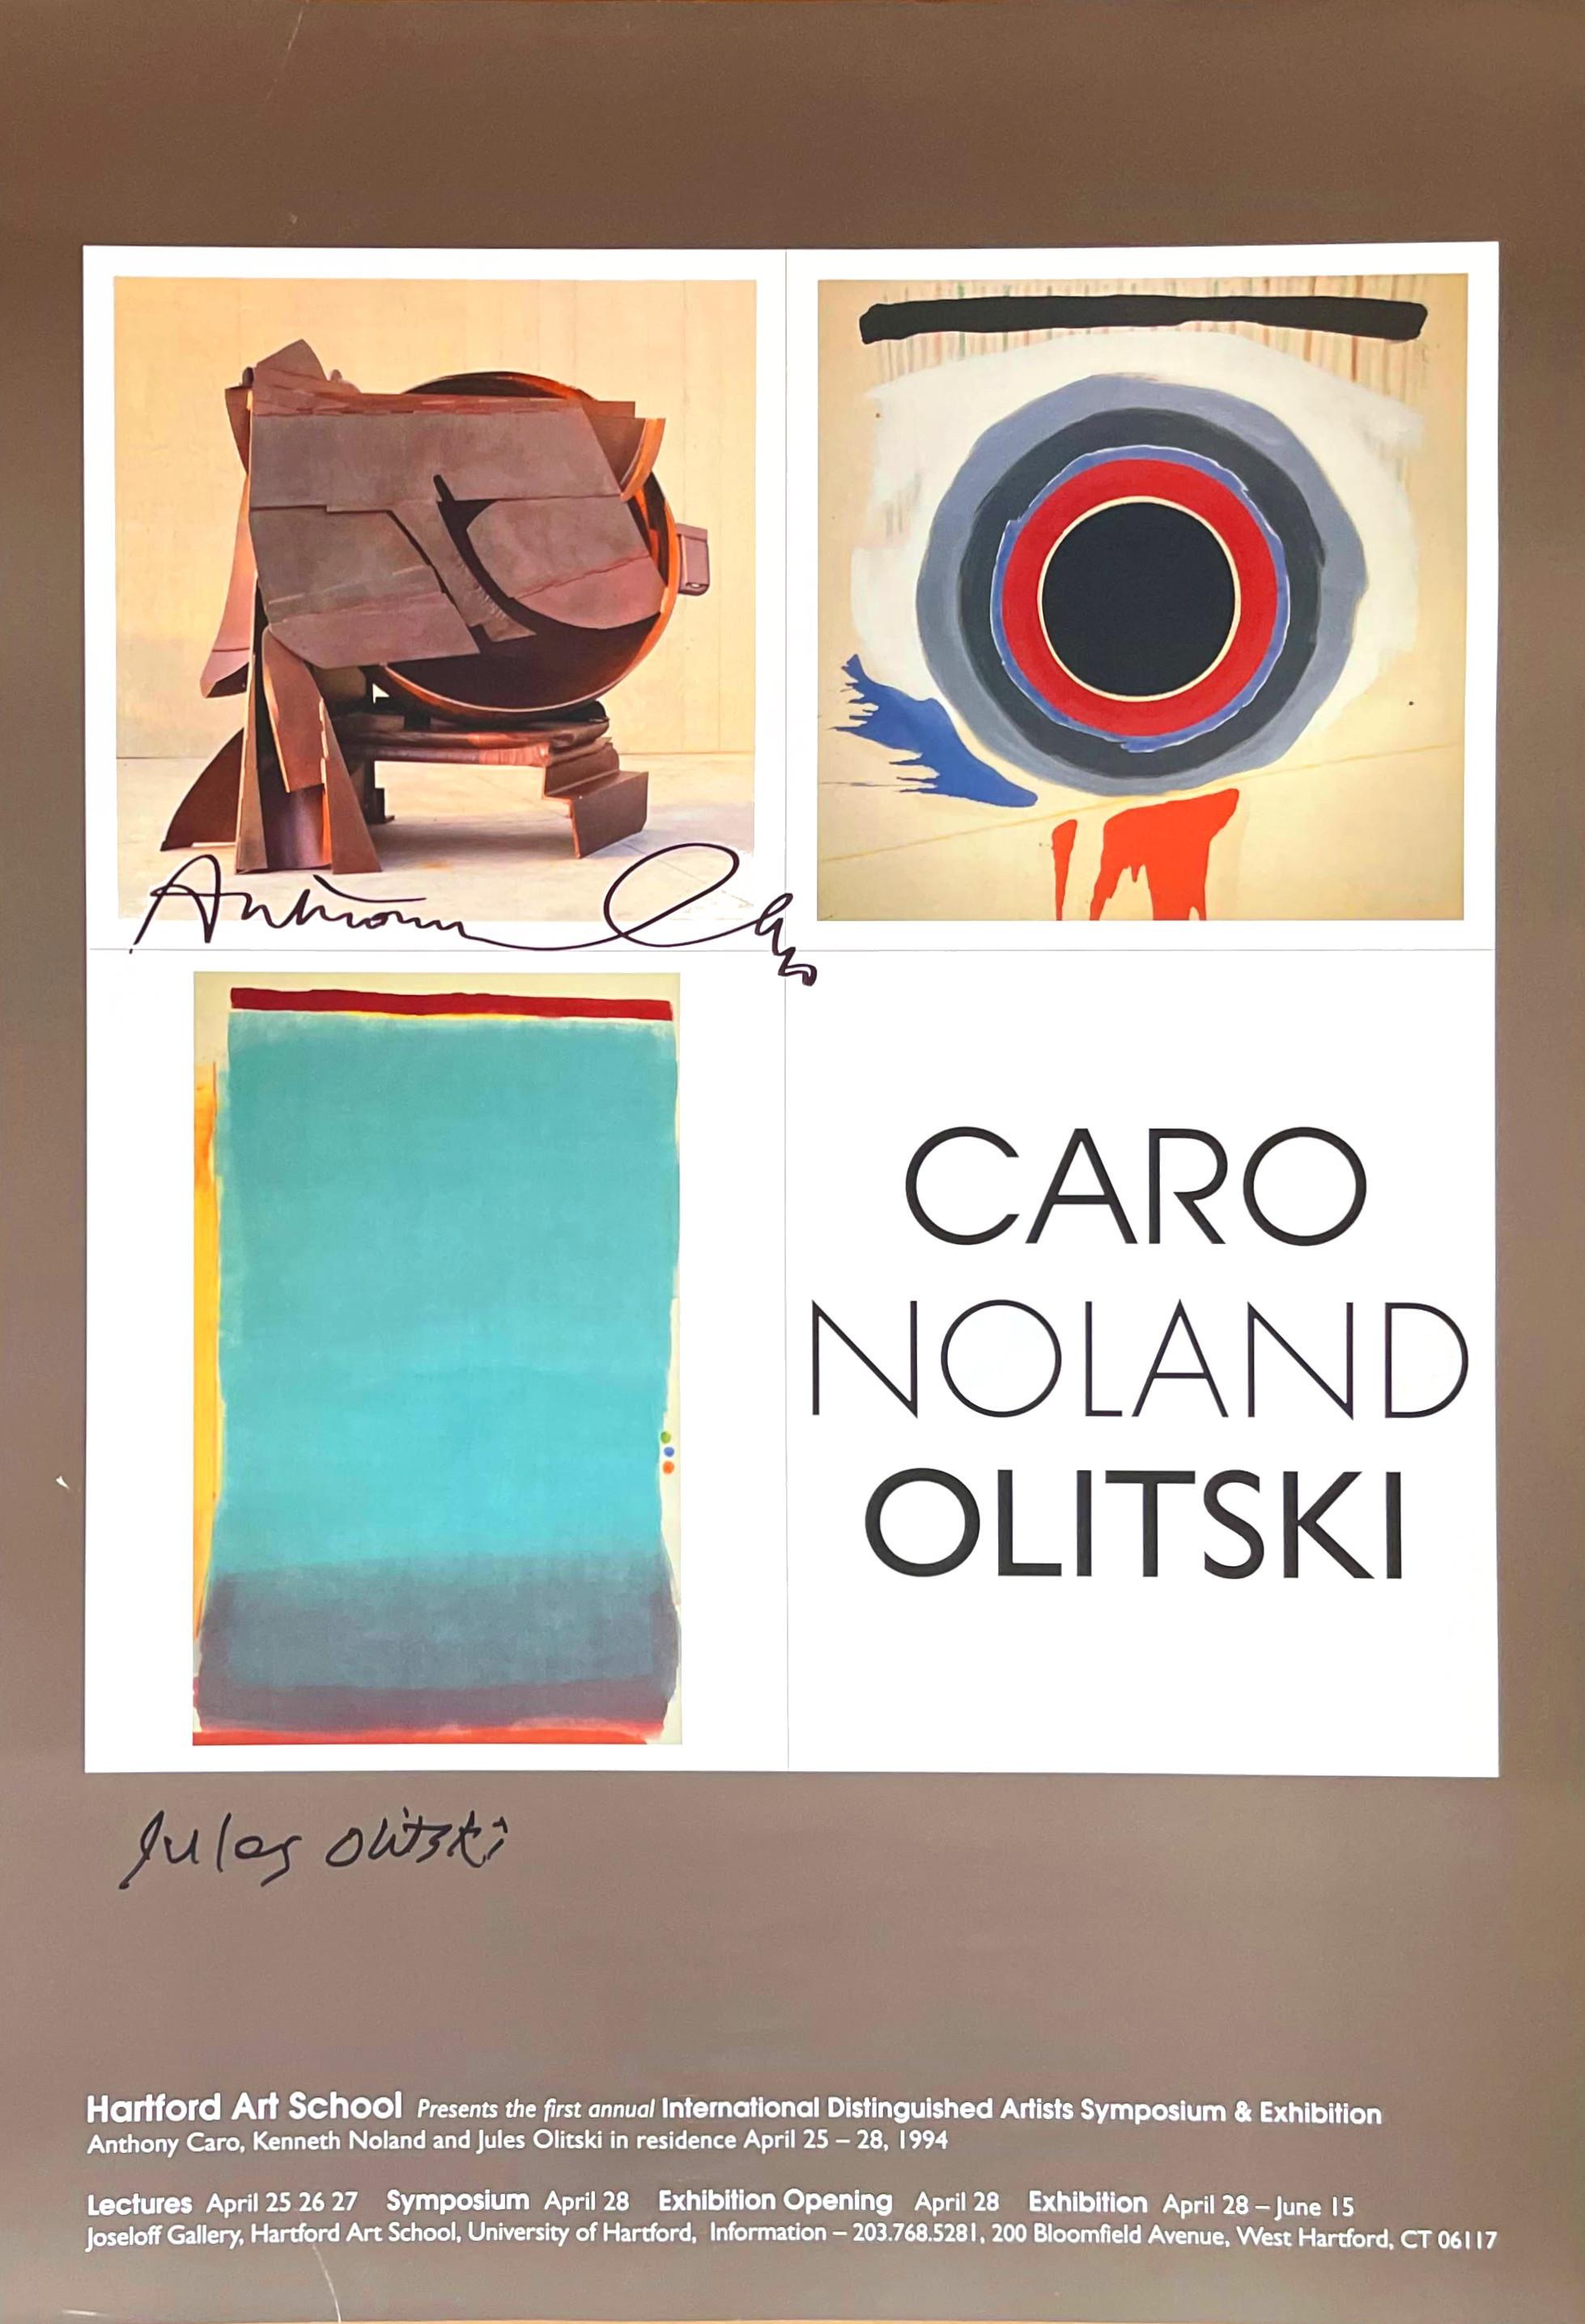 CARO, NOLAND & OLITSKI (Hand signed poster by Anthony Caro and Jules Olitski)